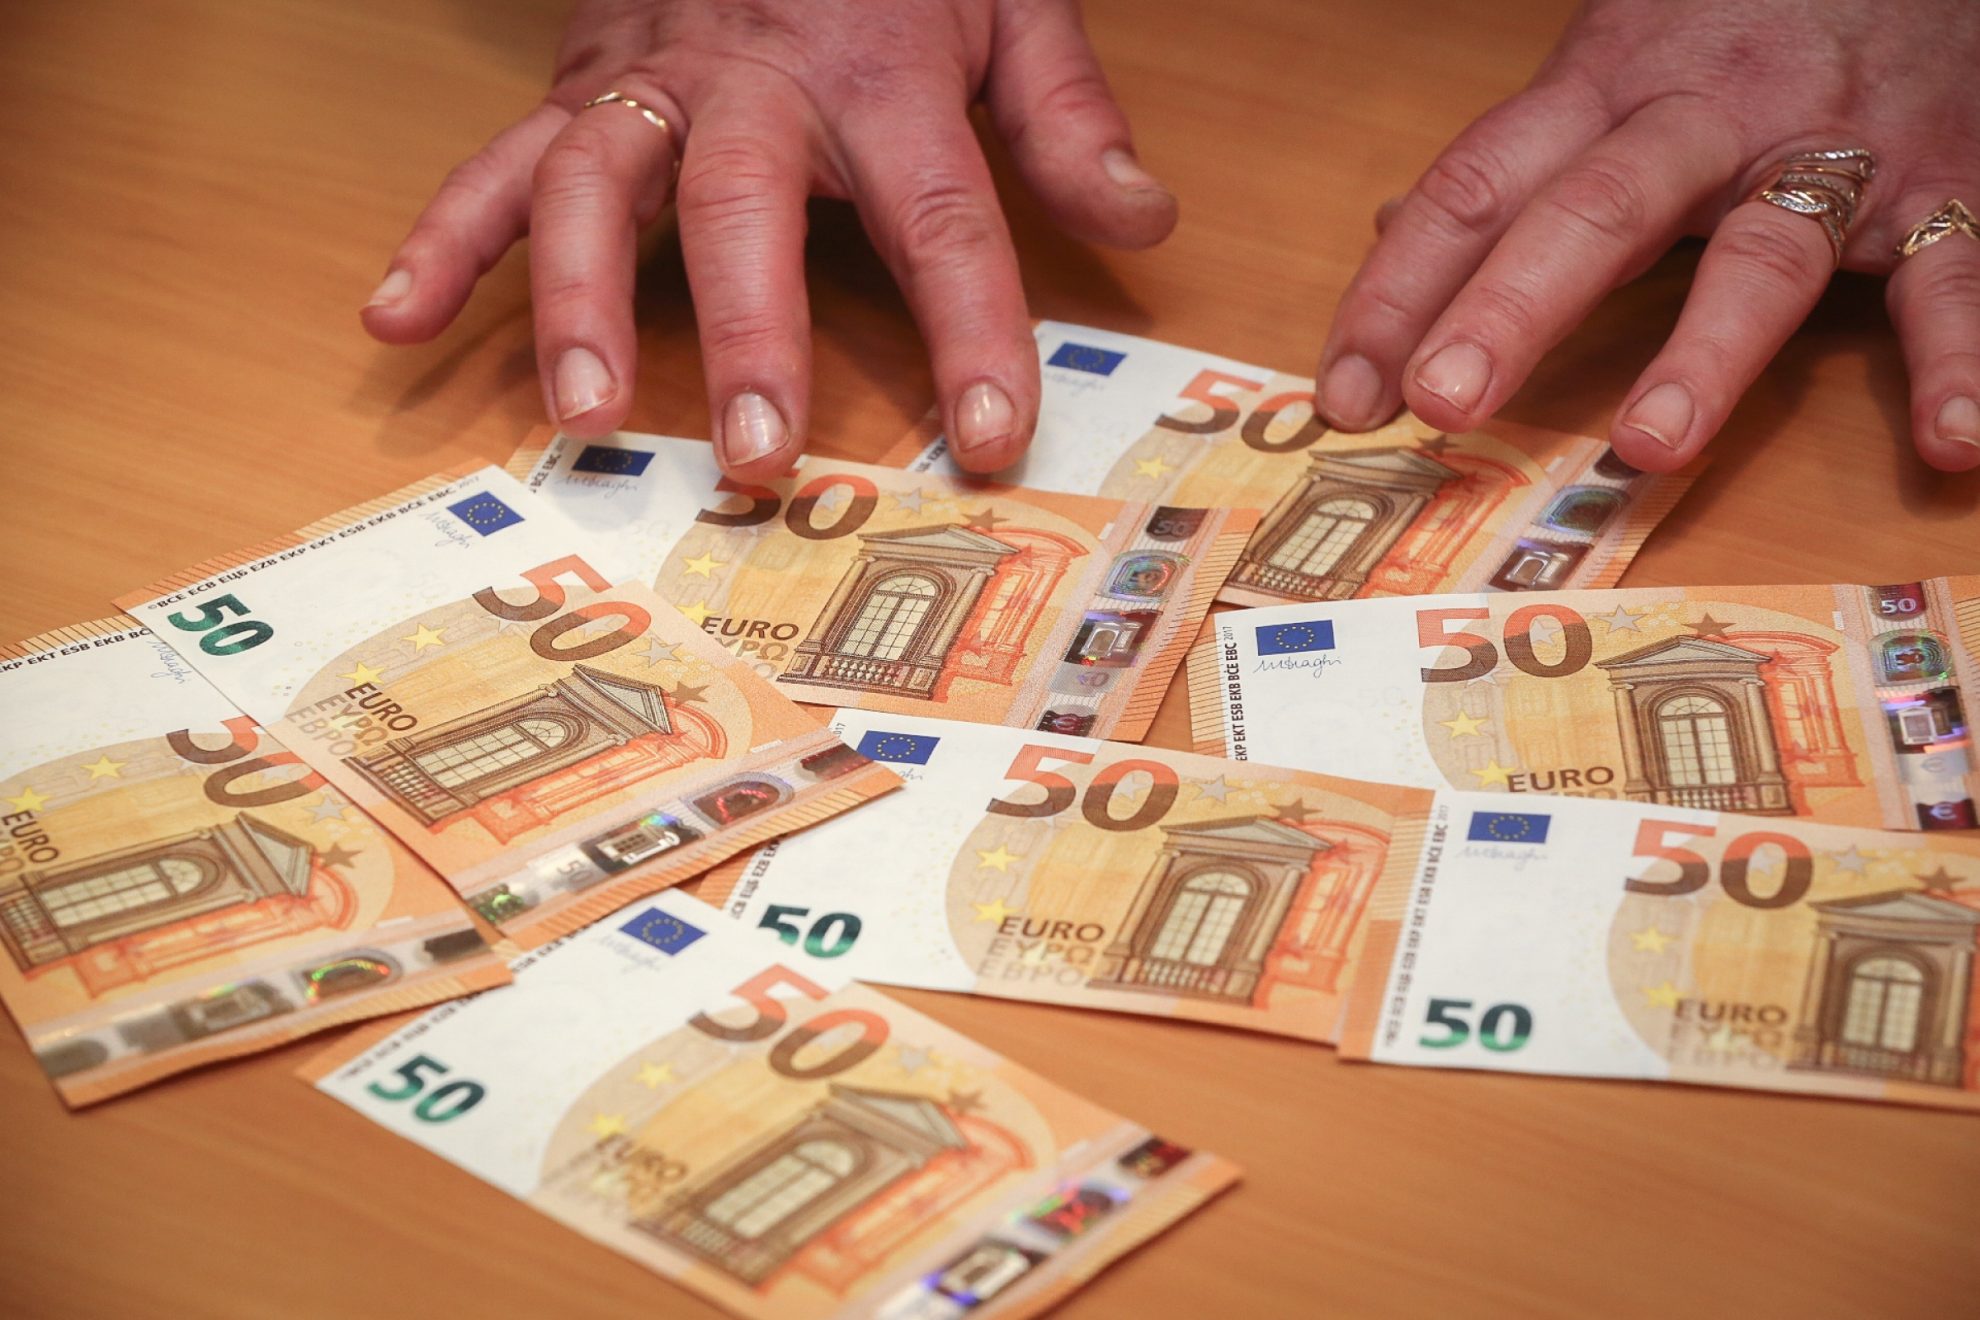 Europos centrinio banko antradienį į apyvartą išleidžiamą naują 50 eurų banknotą bus kur kas sunkiau padirbti, todėl turėtų sumažėti klastojimo atvejų.